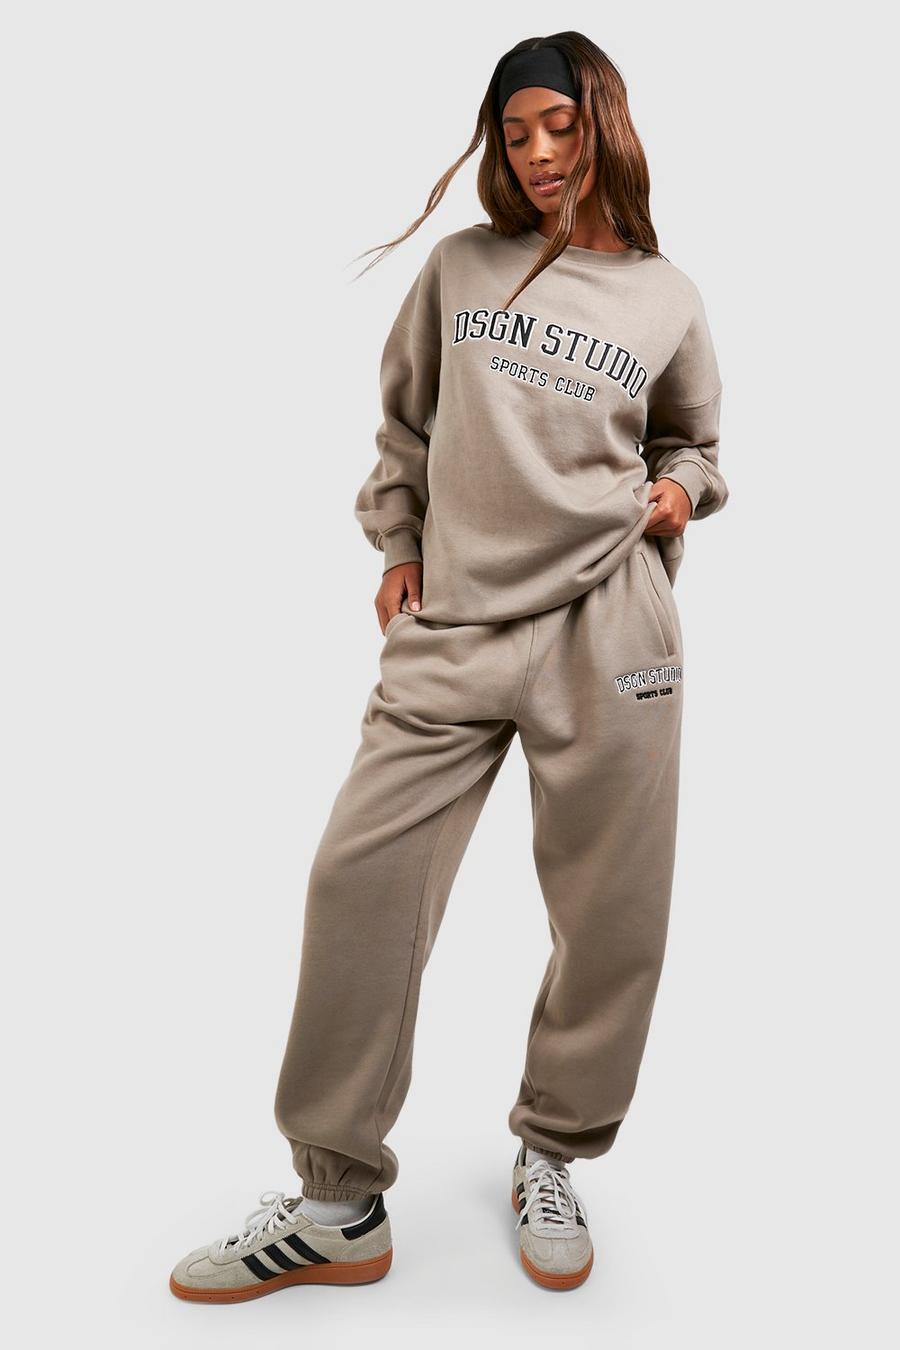 Pantalón deportivo oversize con aplique Dsgn Studio, Stone